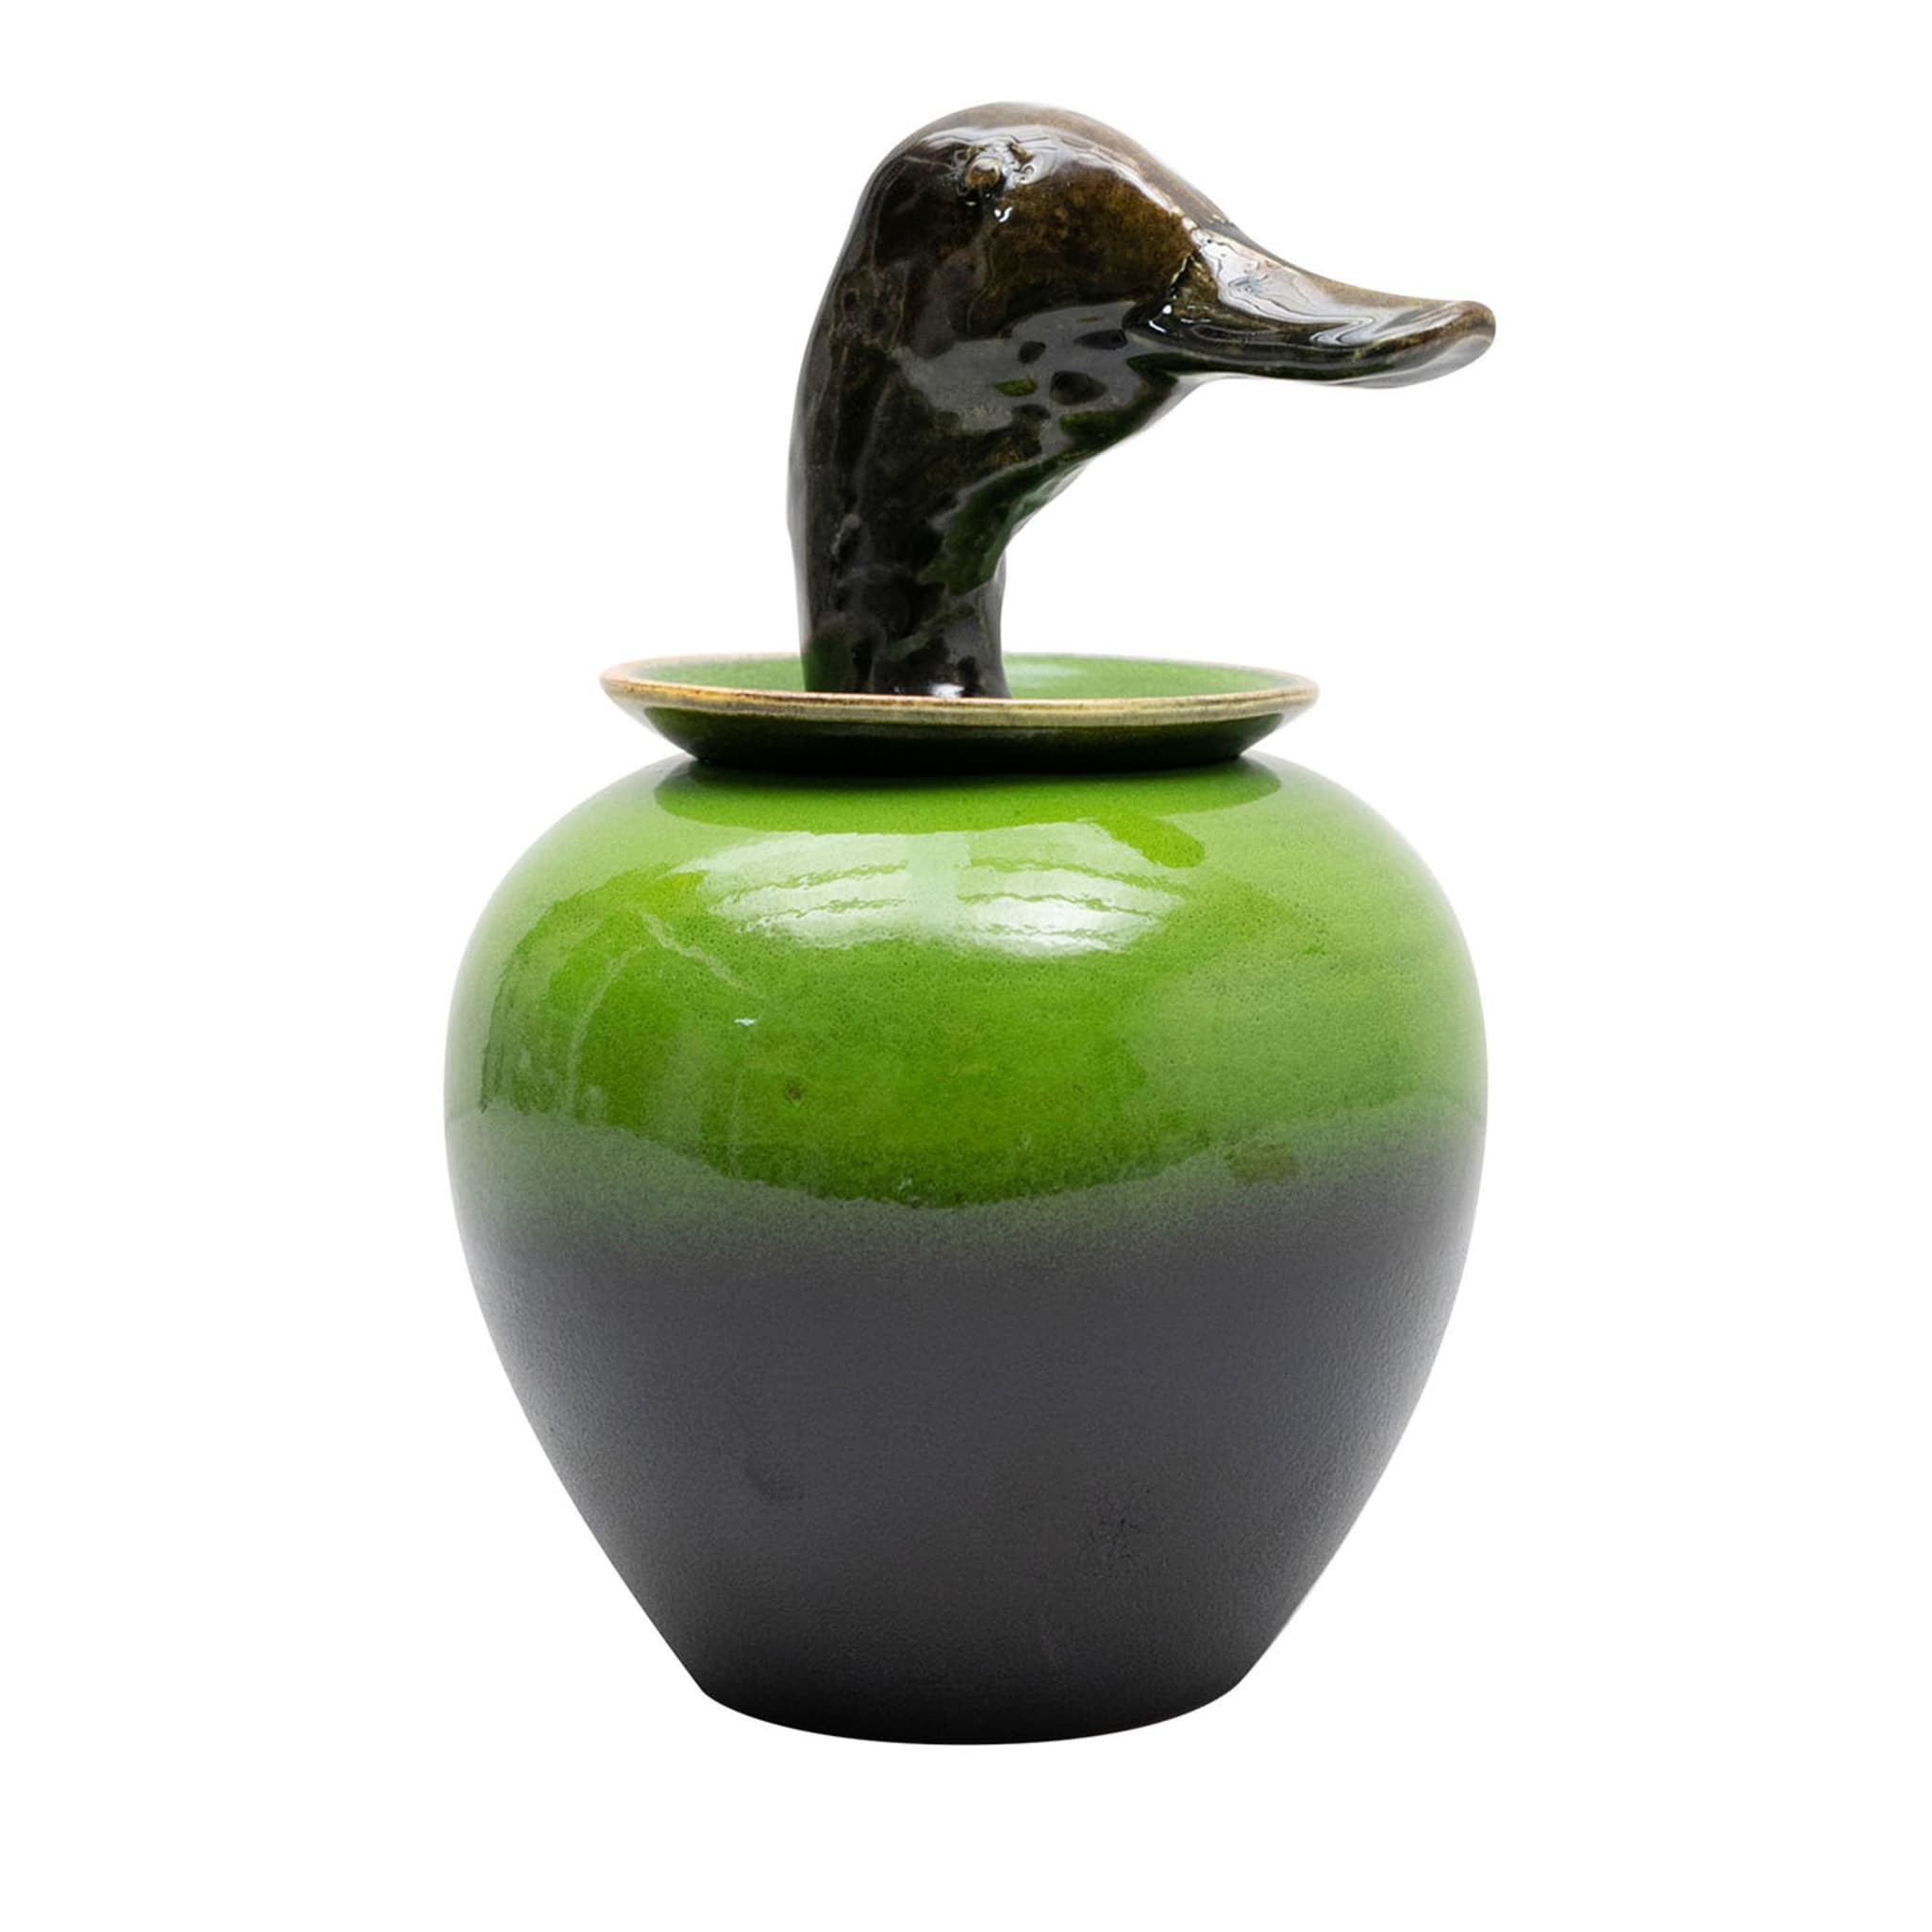 Canopo Anatra Black & Green Vase #1 - Main view